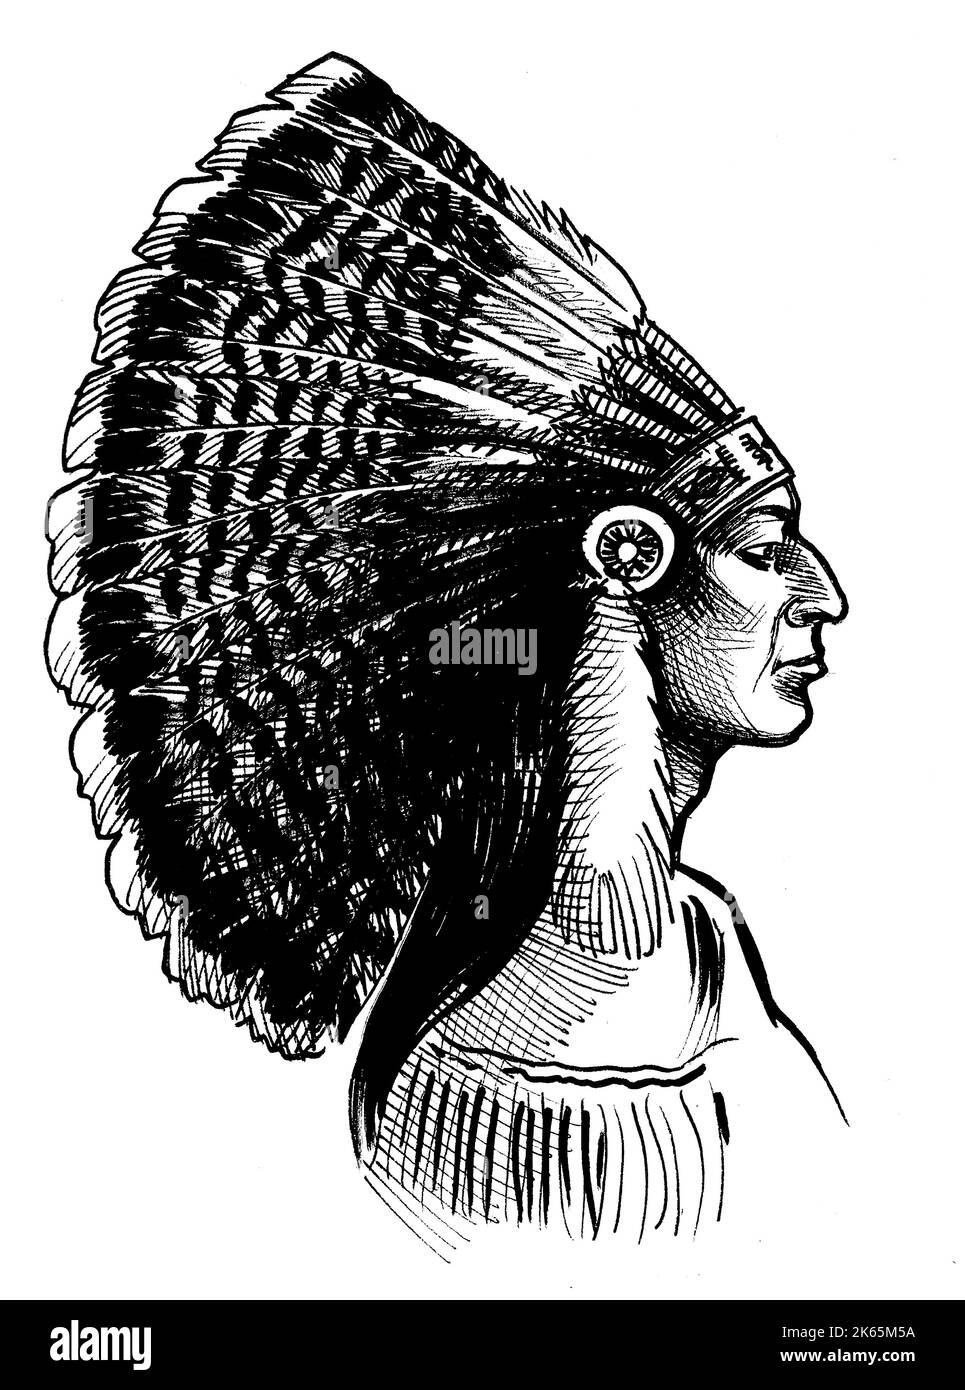 Chef américain natif en coiffures traditionnelles. Dessin noir et blanc Banque D'Images